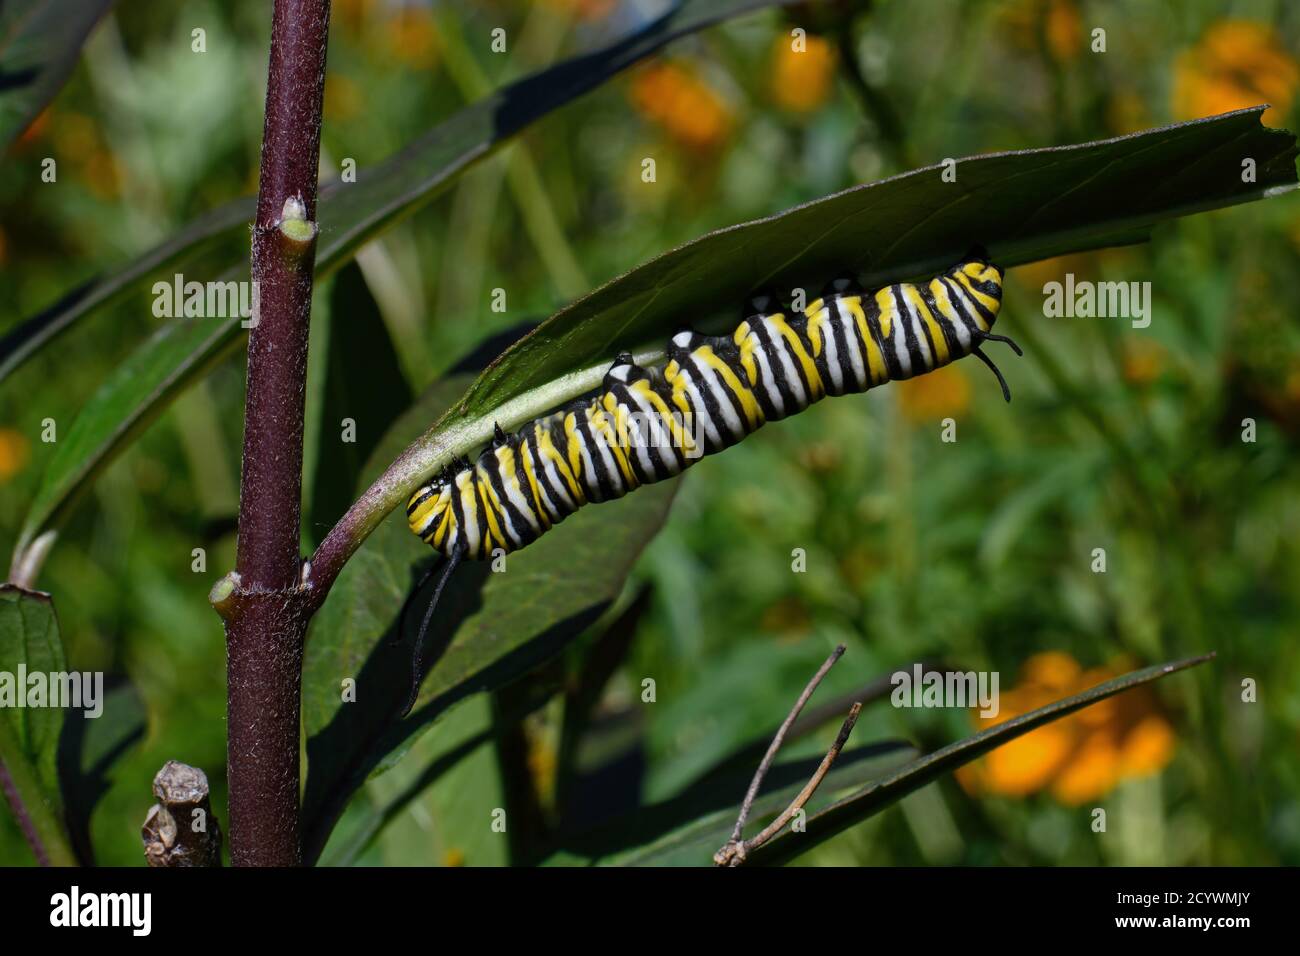 chenille de papillon de monarque sur feuille de laitoued. C'est un papillon de la famille des Nymphalidae qui est menacé par la perte d'habitat aux États-Unis. Banque D'Images